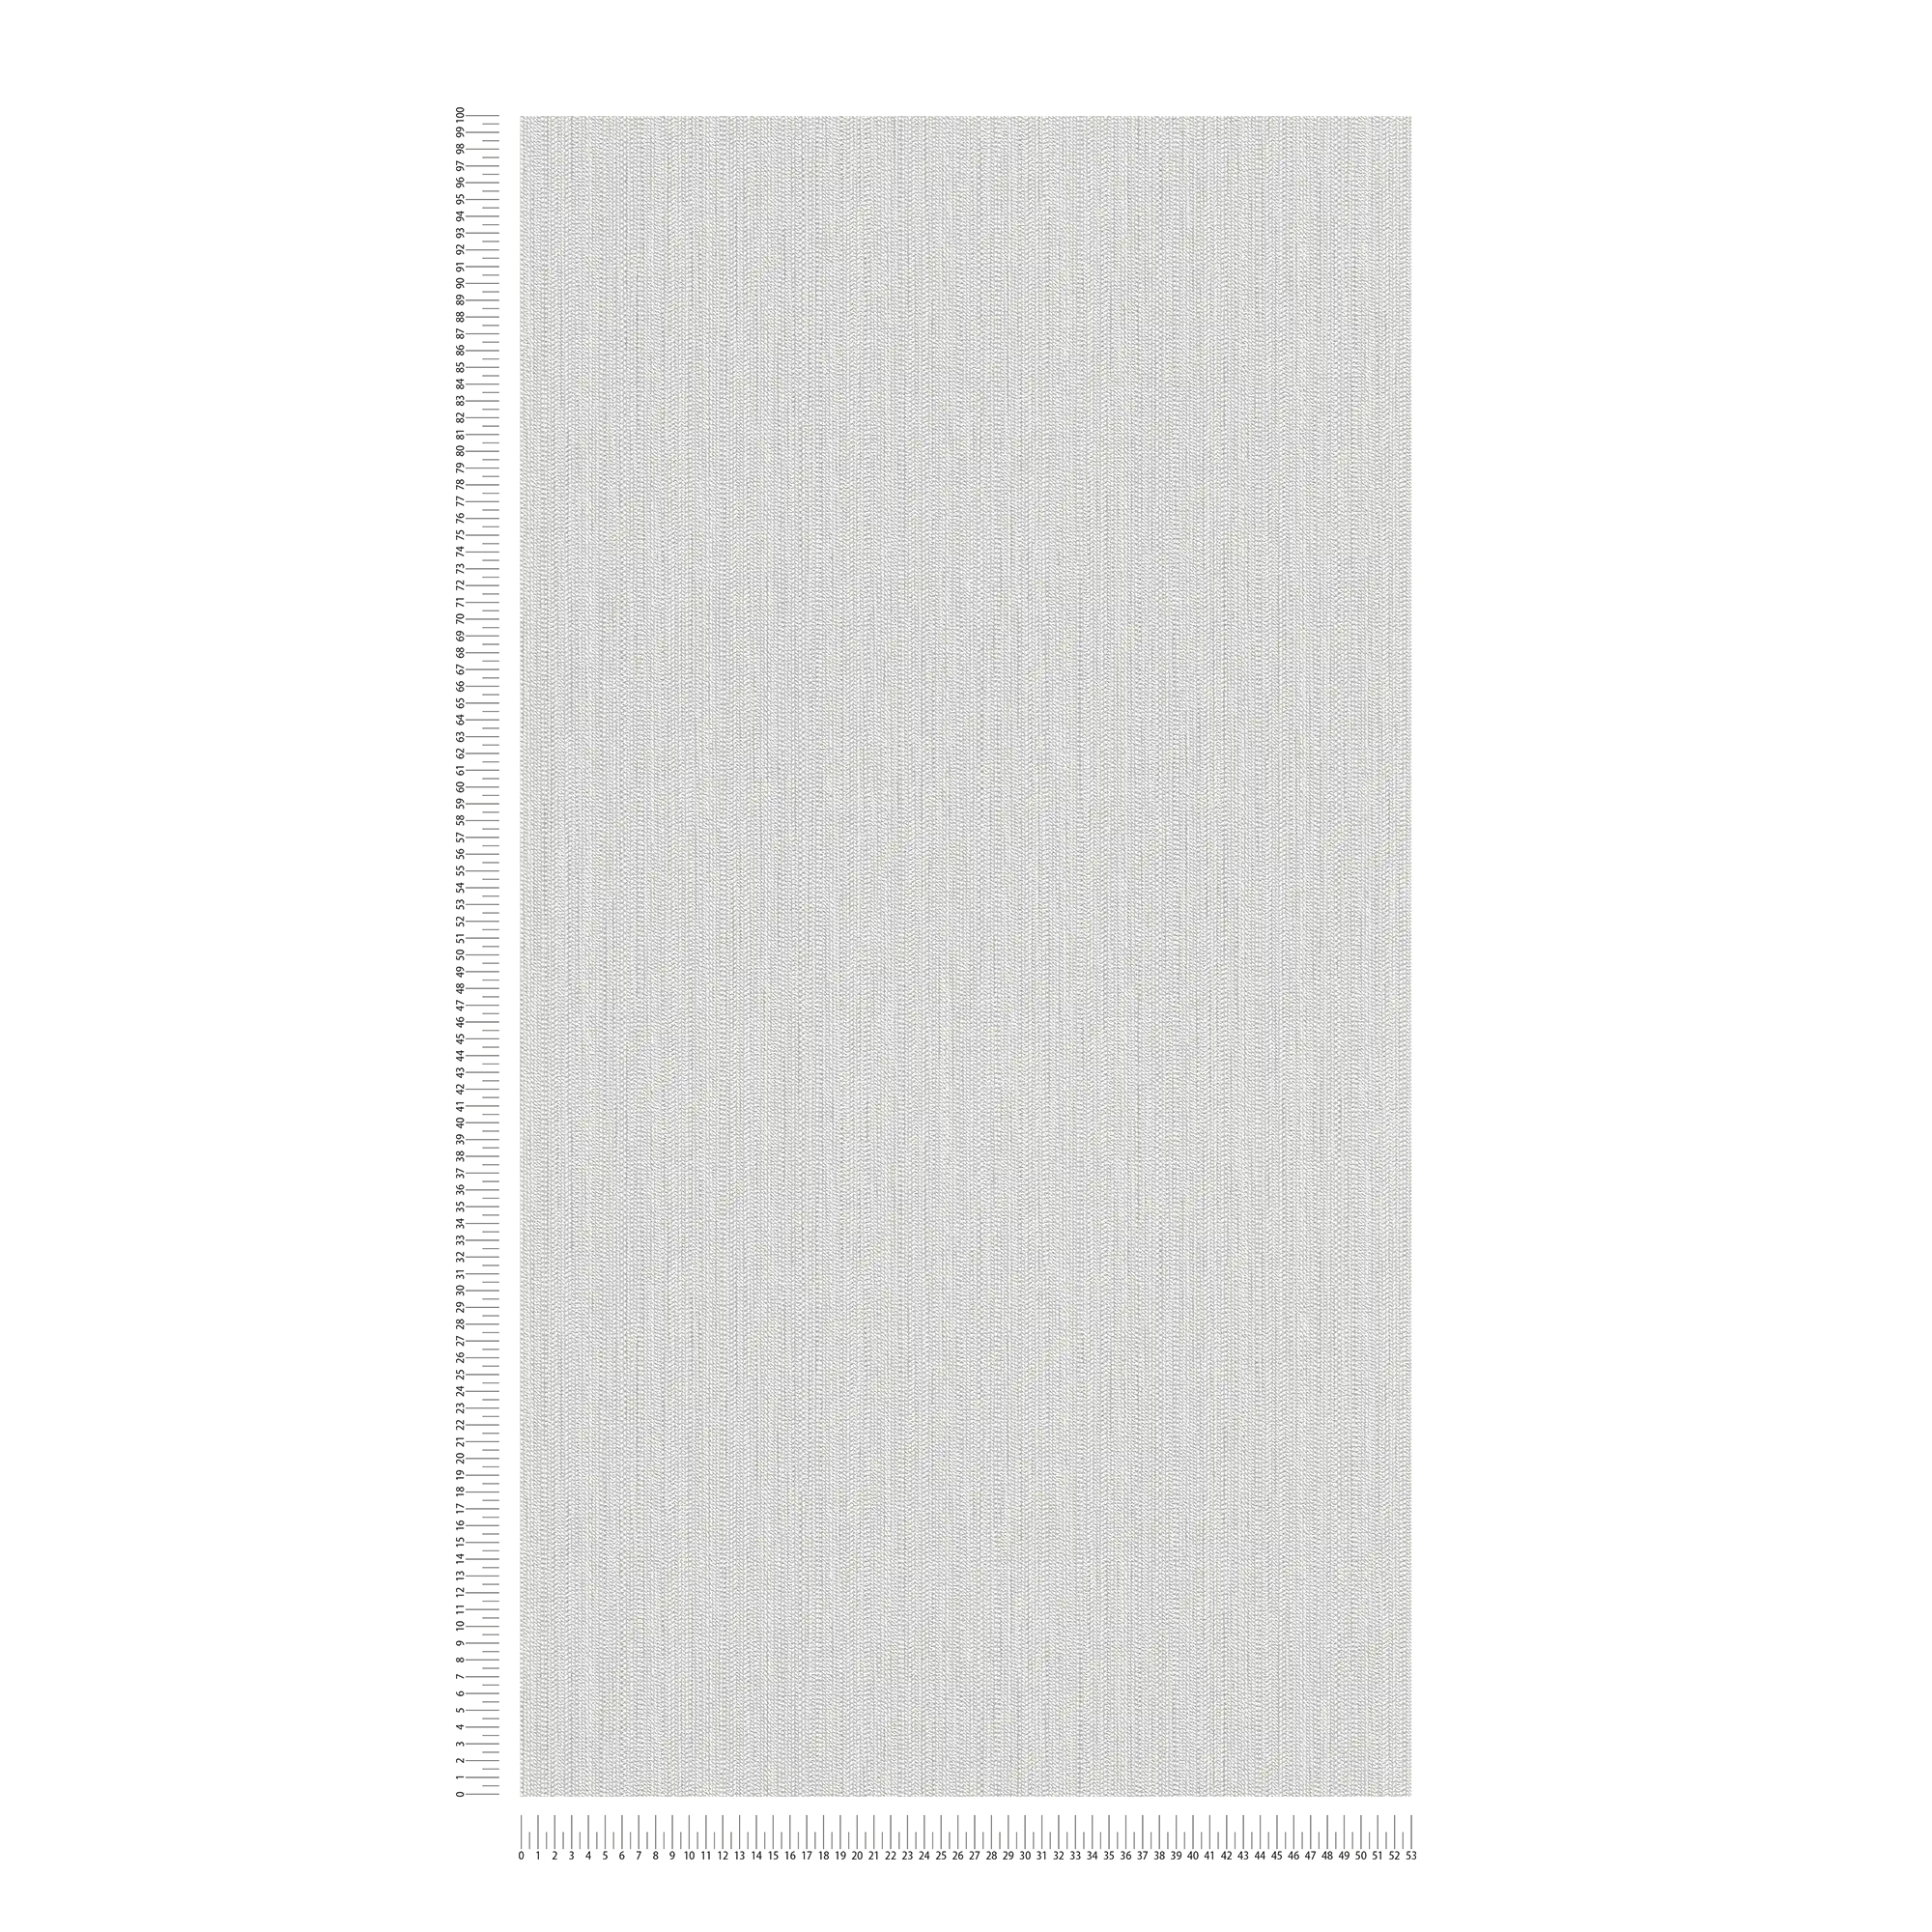             Carta da parati in tessuto non tessuto con struttura a treccia - bianco, grigio chiaro
        